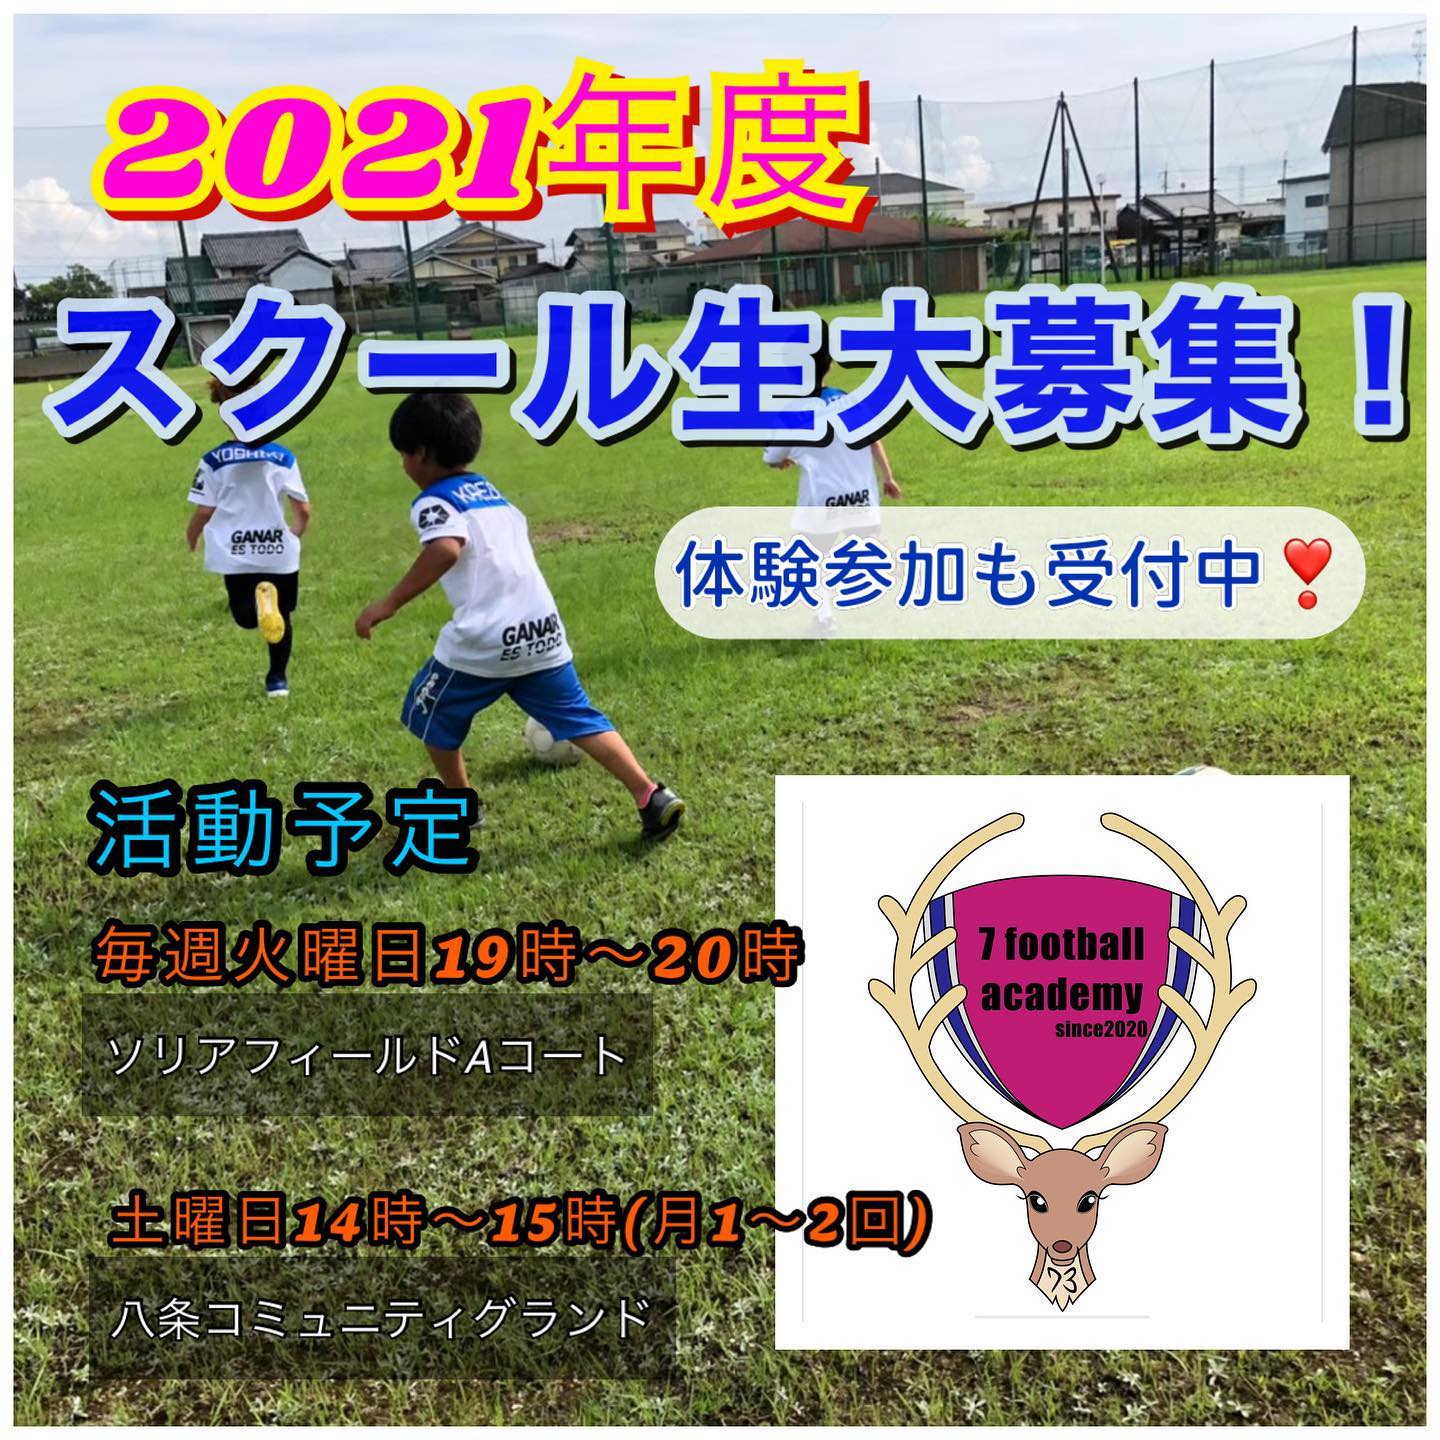 奈良県 7footballacademy スポサーチ